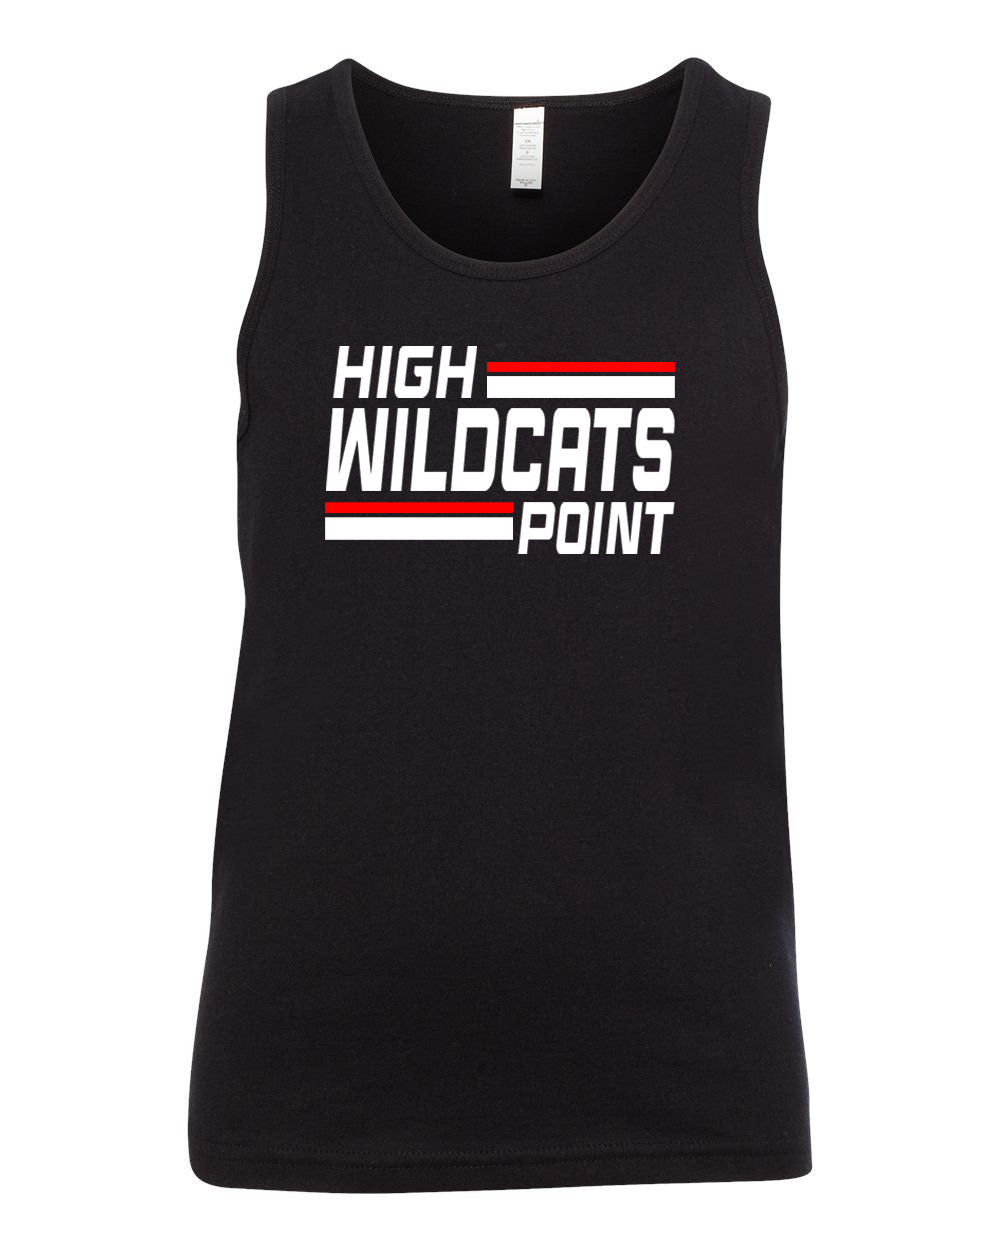 Wildcats Cheer design 4 Ladies Muscle Tank Top